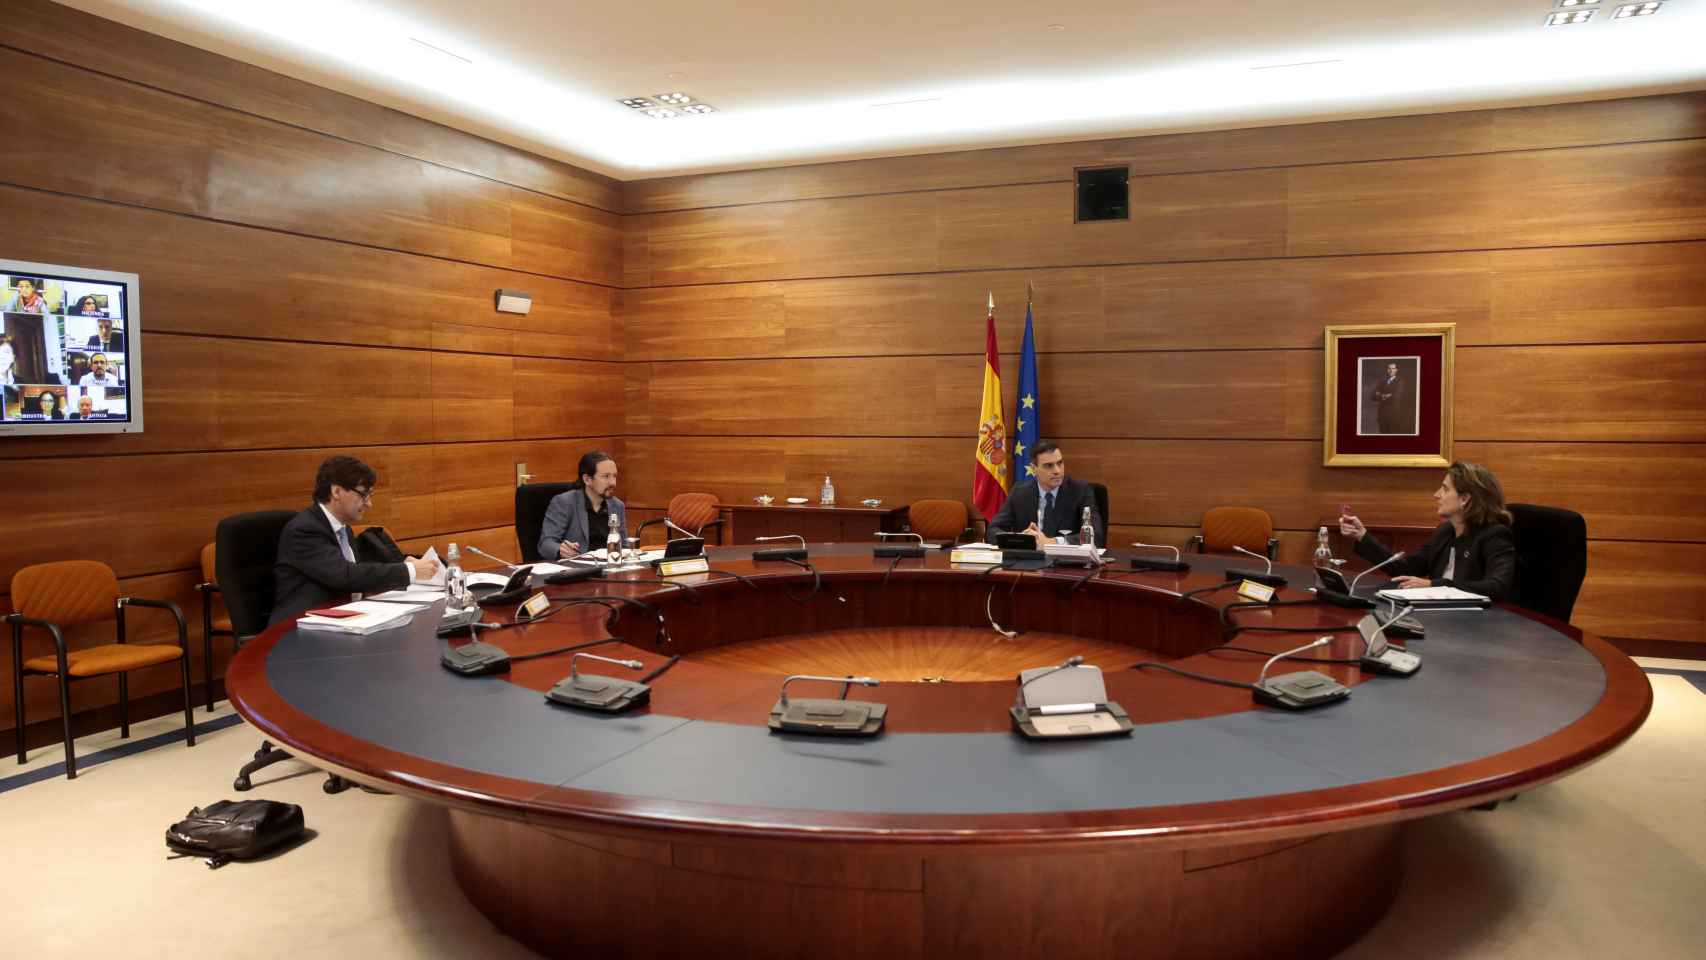 Pedro Sánchez, Teresa Ribera, Salvador Illa y Pablo Iglesias asisten al Consejo de Ministros de manera presencial.